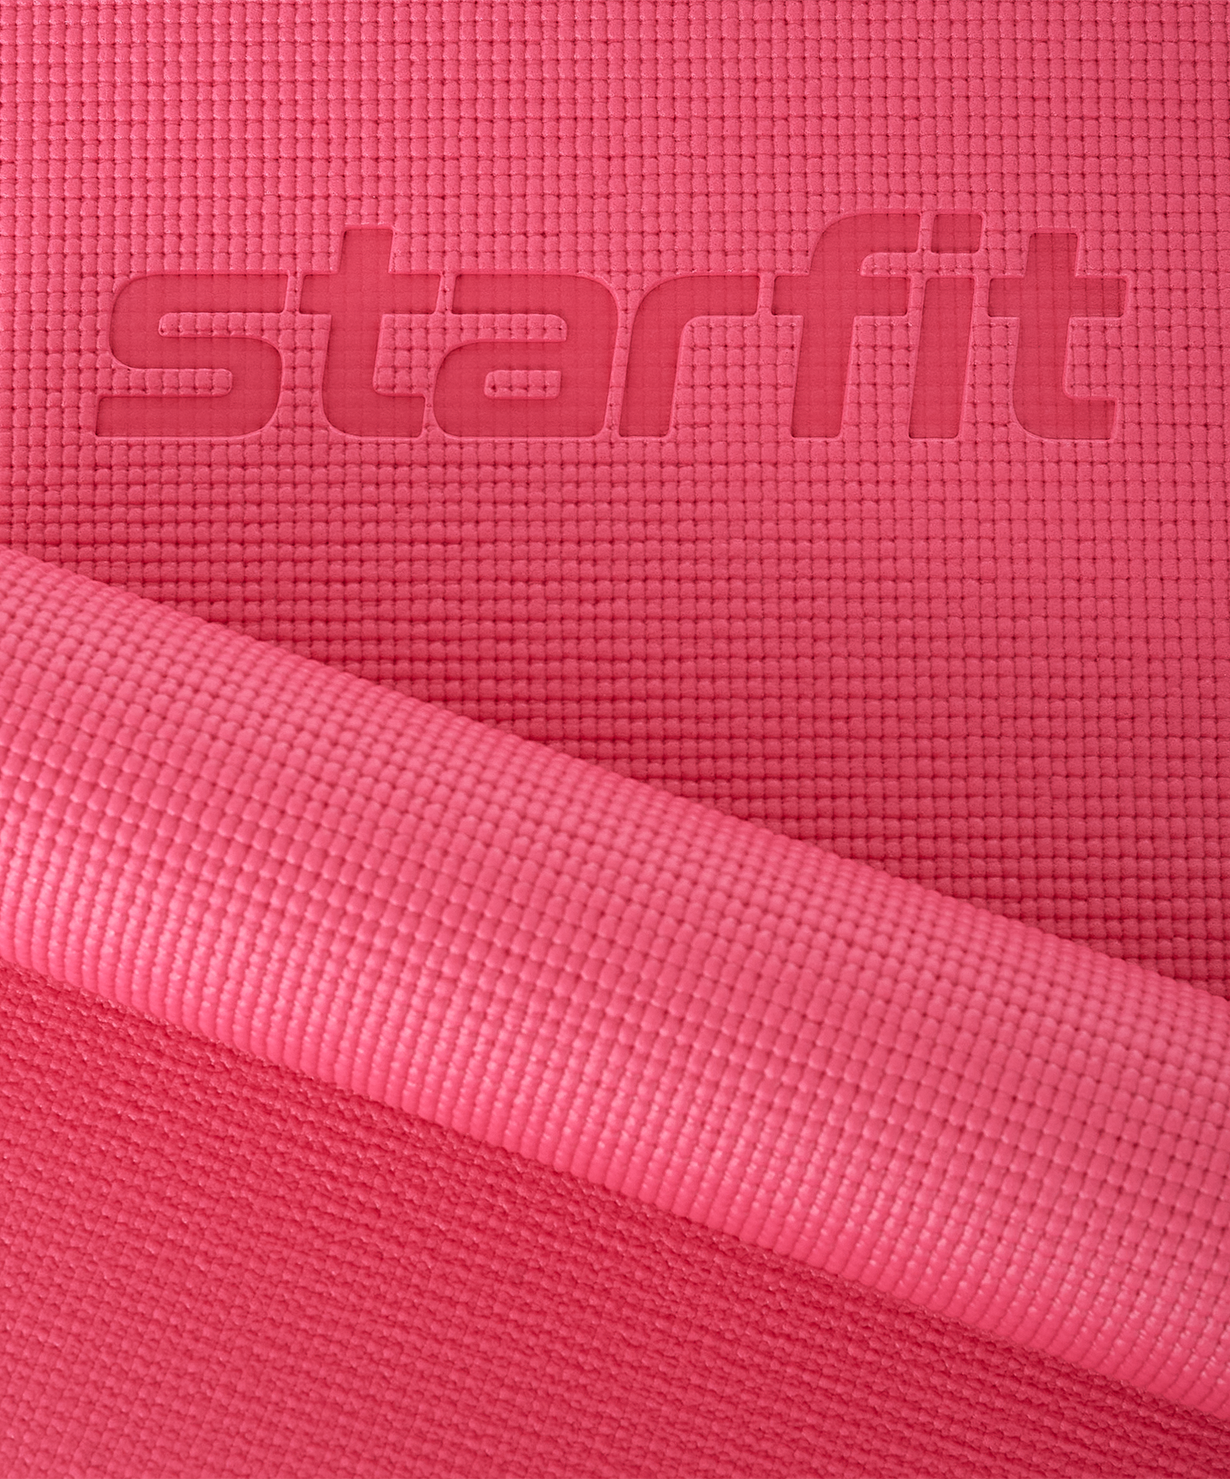 Коврик для йоги и фитнеса FM-101, PVC, 173x61x0,6 см, розовый